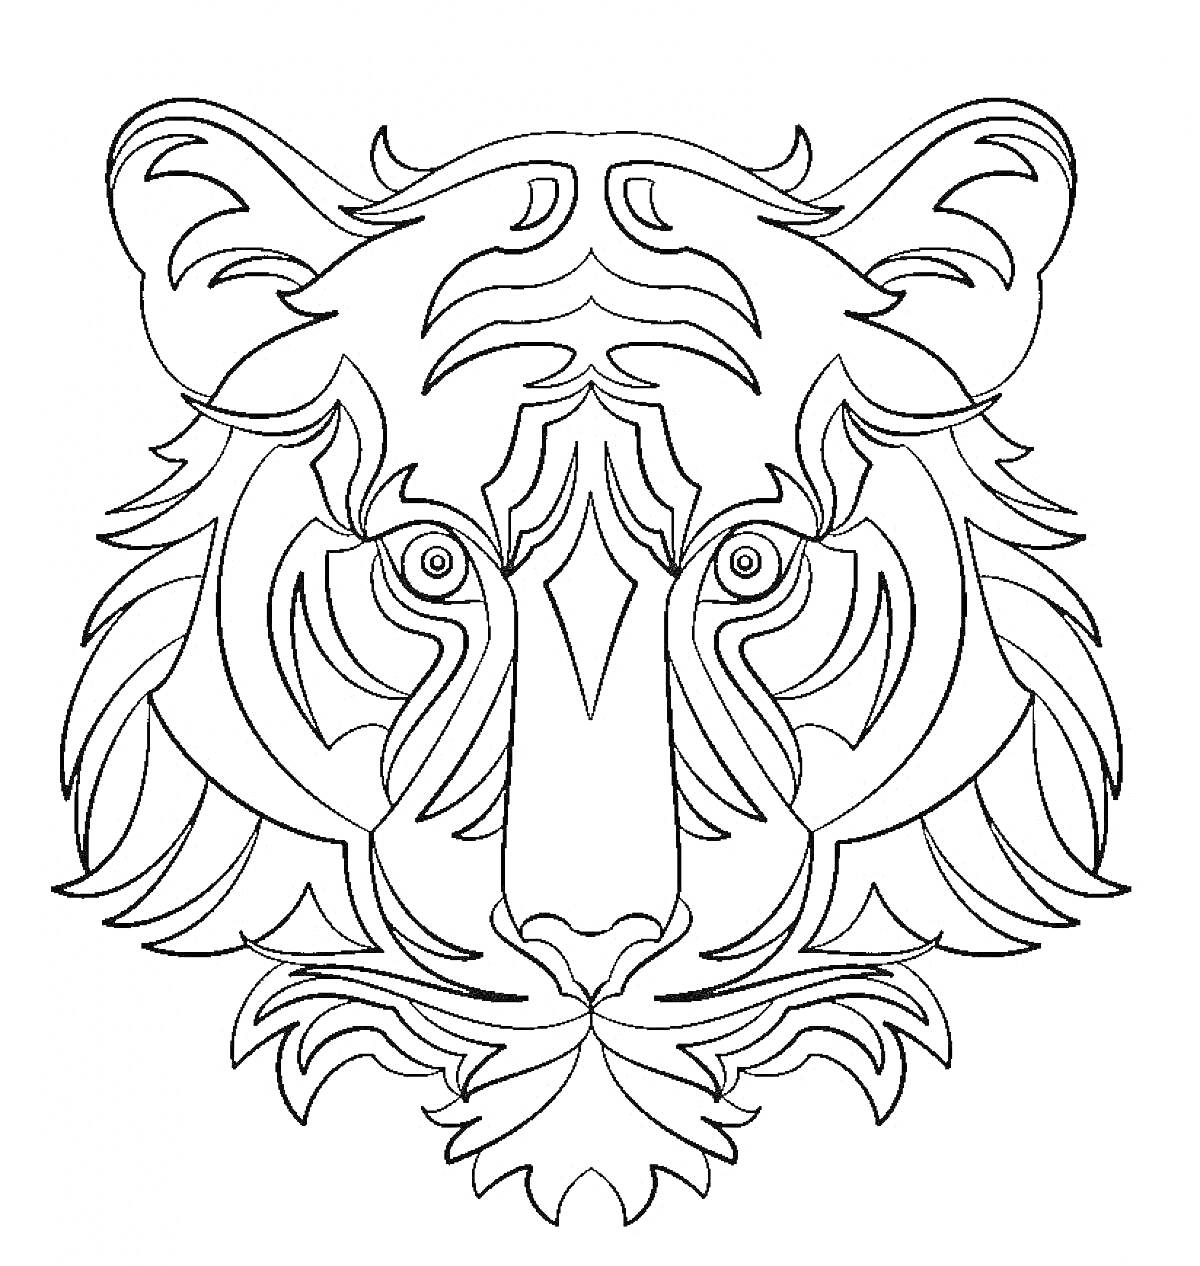 Раскраска Антистресс раскраска с тигром в стиле дудлинг с абстрактными узорами.